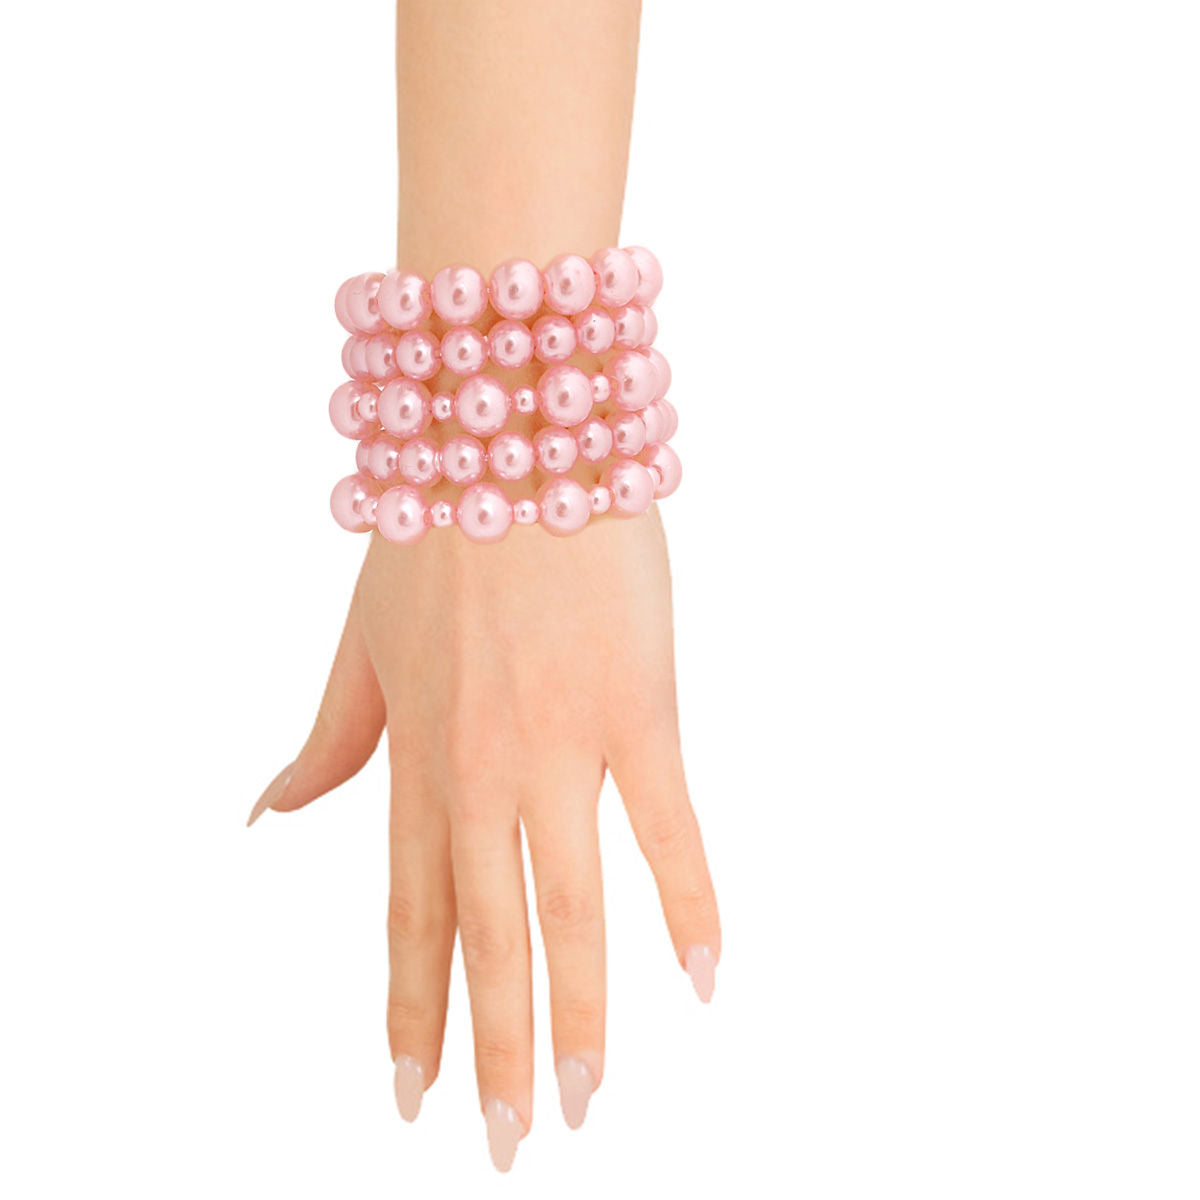 5 Pcs Pink Pearl Bracelets